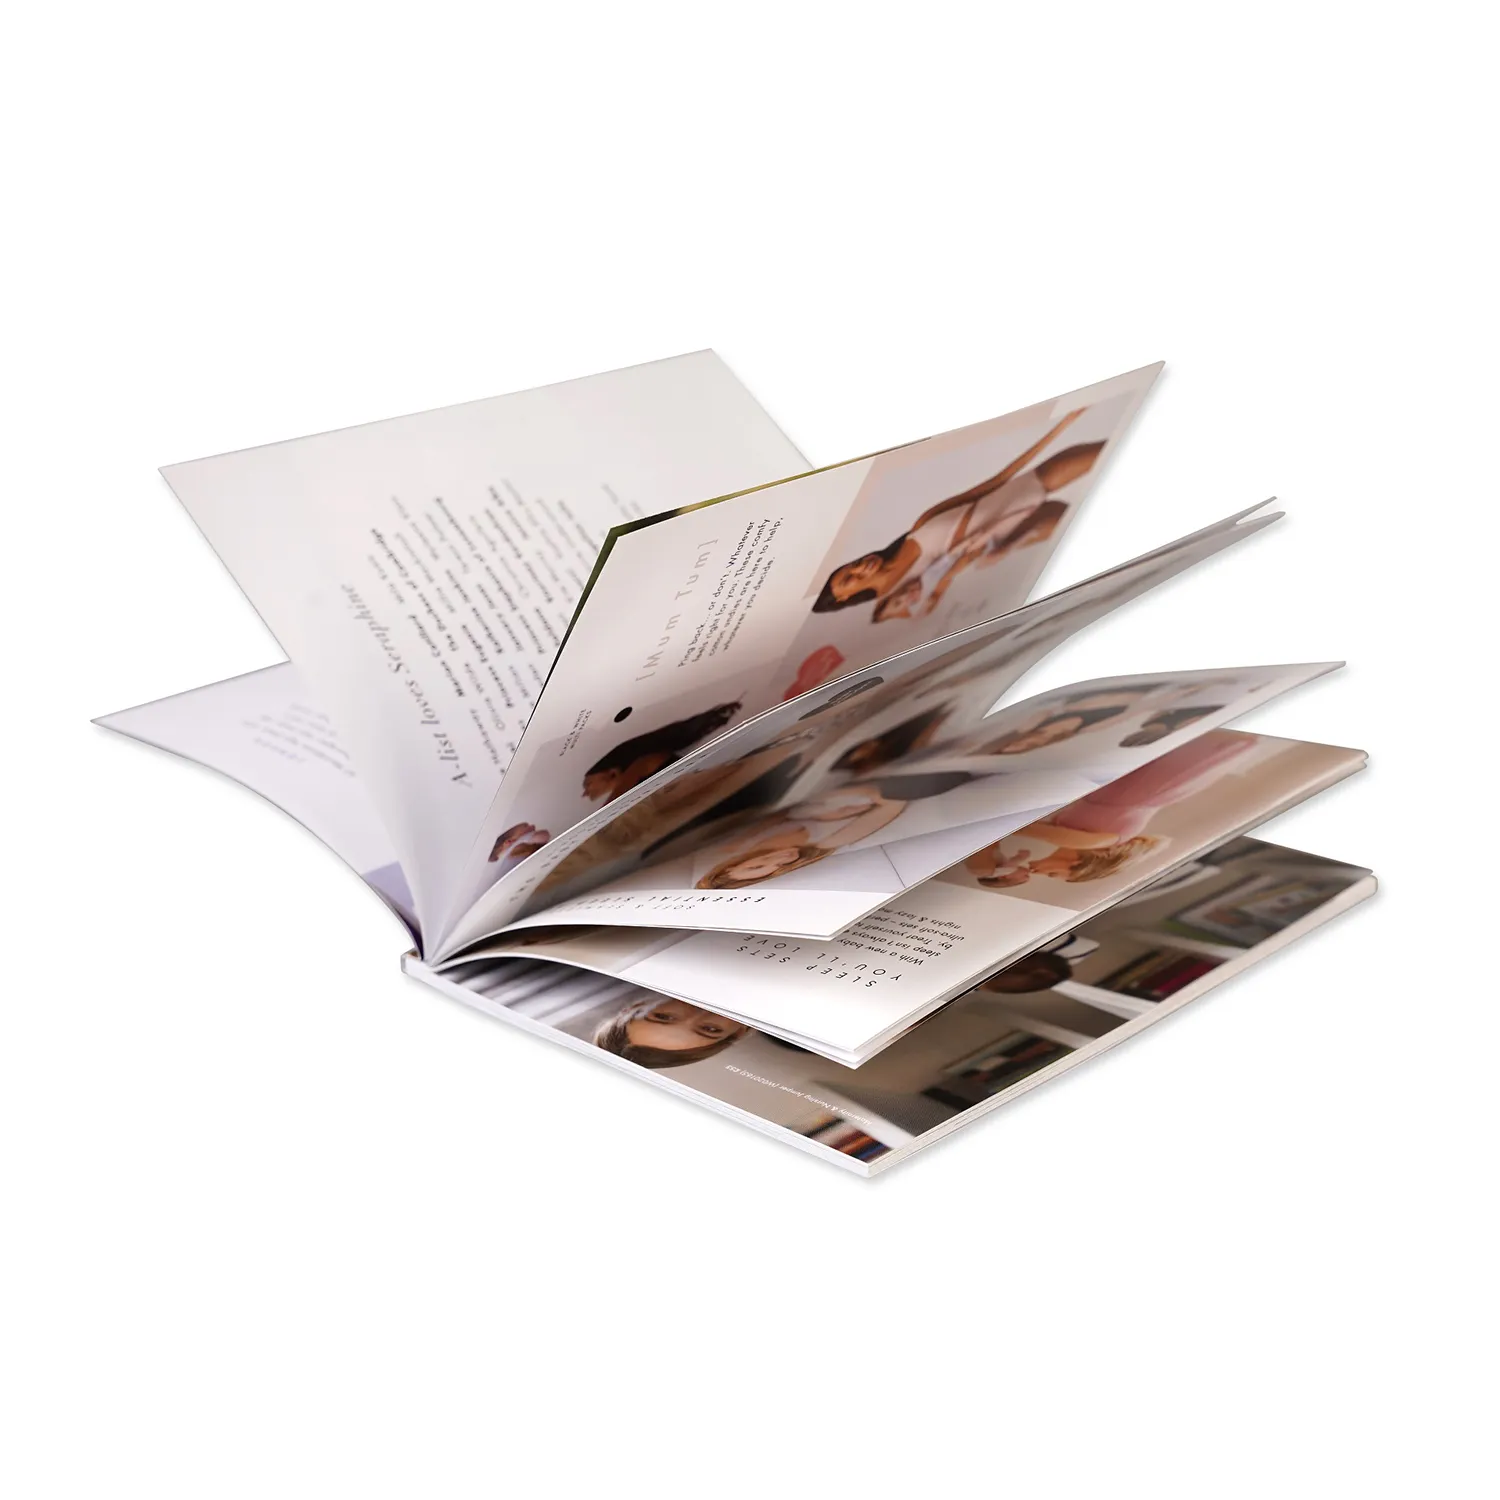 Fábrica Profissional Folheto Personalizado Impressão Offset Folha De Impressão Folhetos Design Folheto E Brochura De Impressão